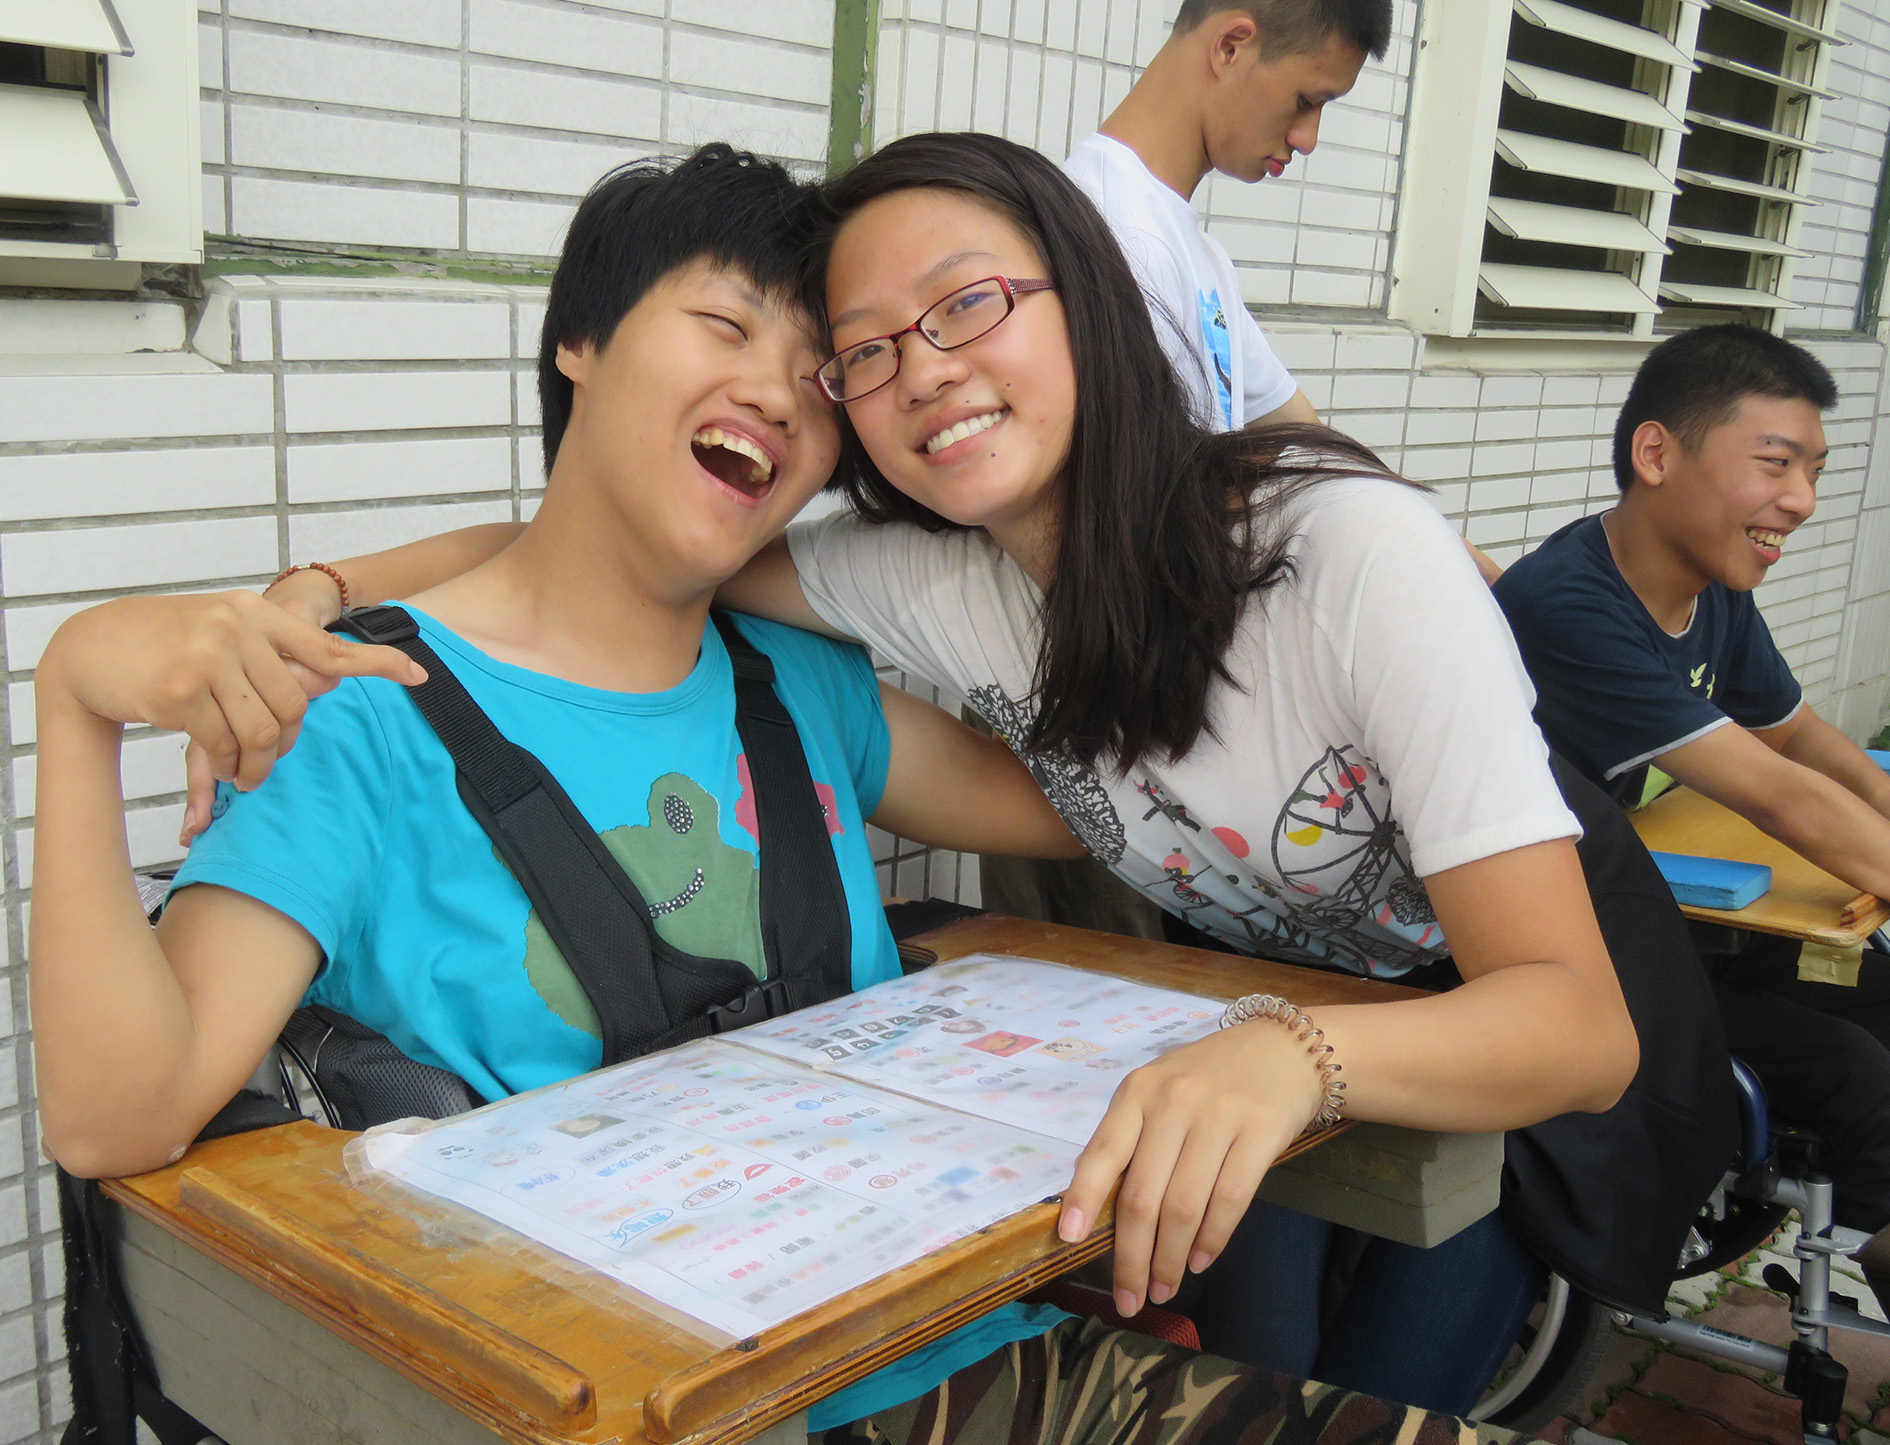 Eine amerikanische Frau und eine taiwanische Frau im Rollstuhl umarmen sich.